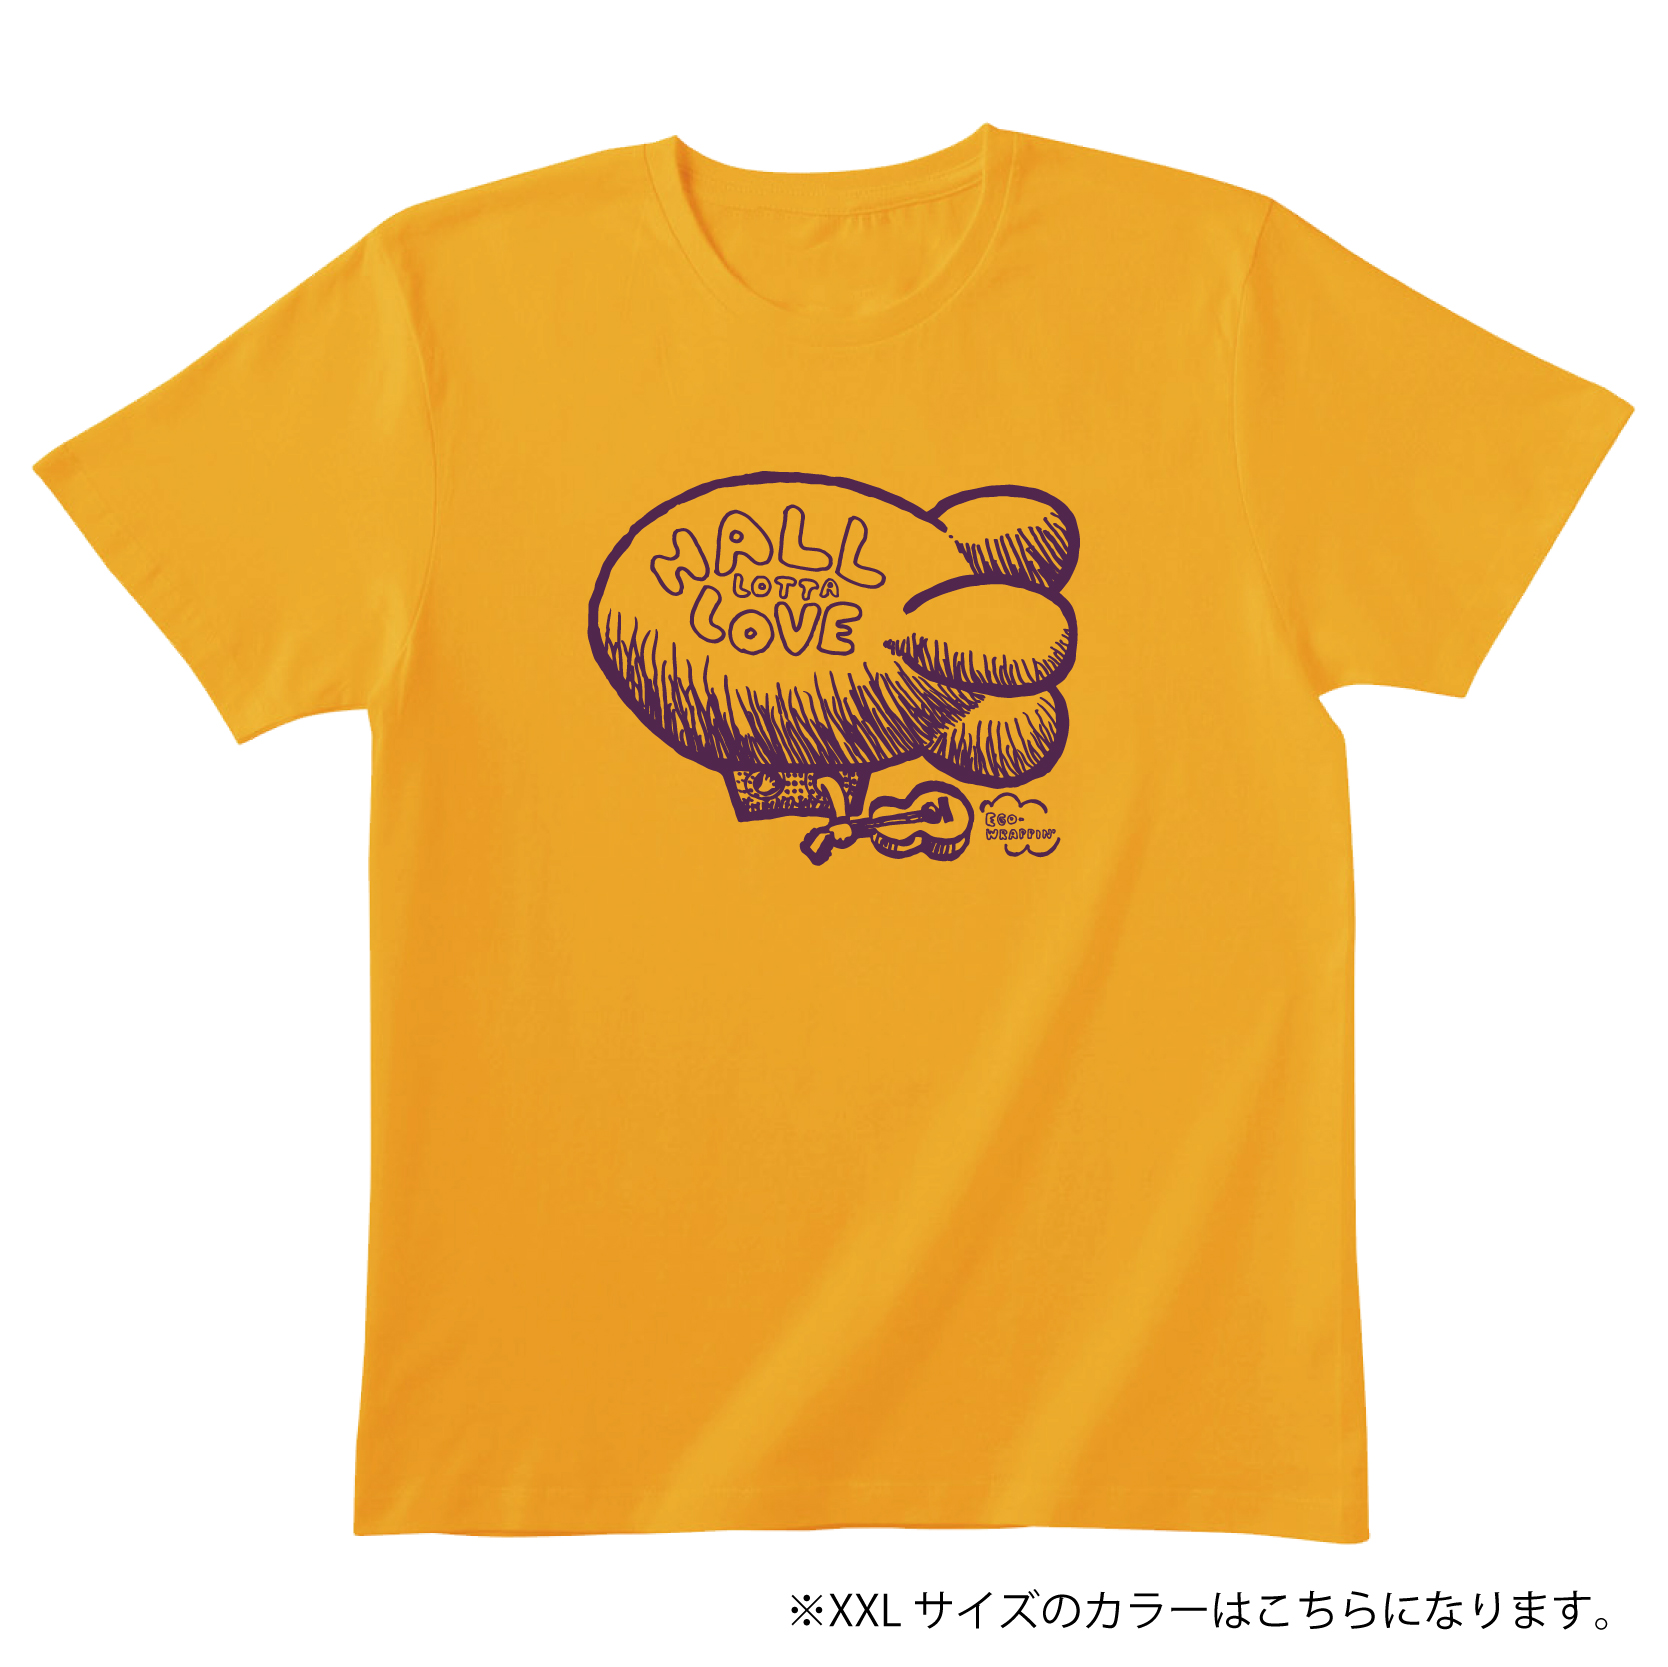 HALL LOTTA LOVE 2020 Tシャツ【HEATHER YELLOW】